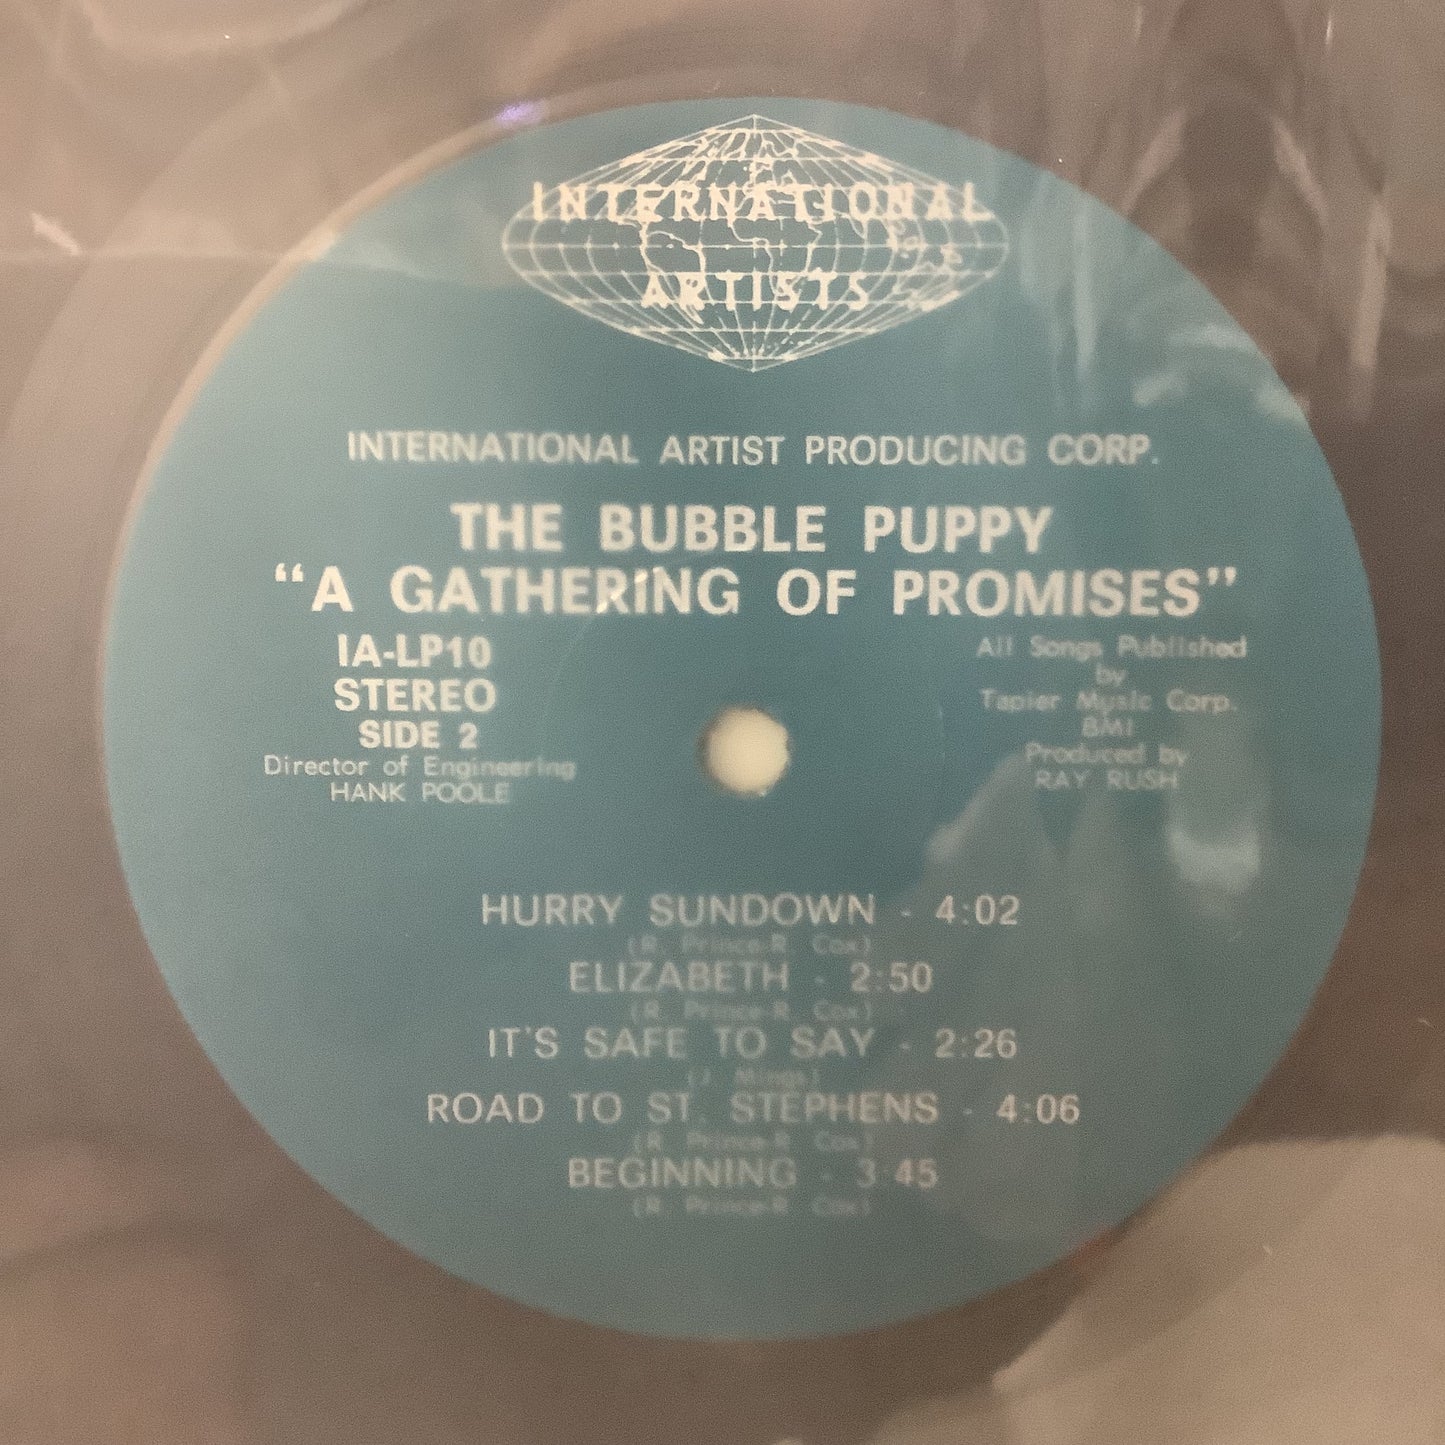 Bubble Puppy - Una reunión de promesas - LP de artistas internacionales